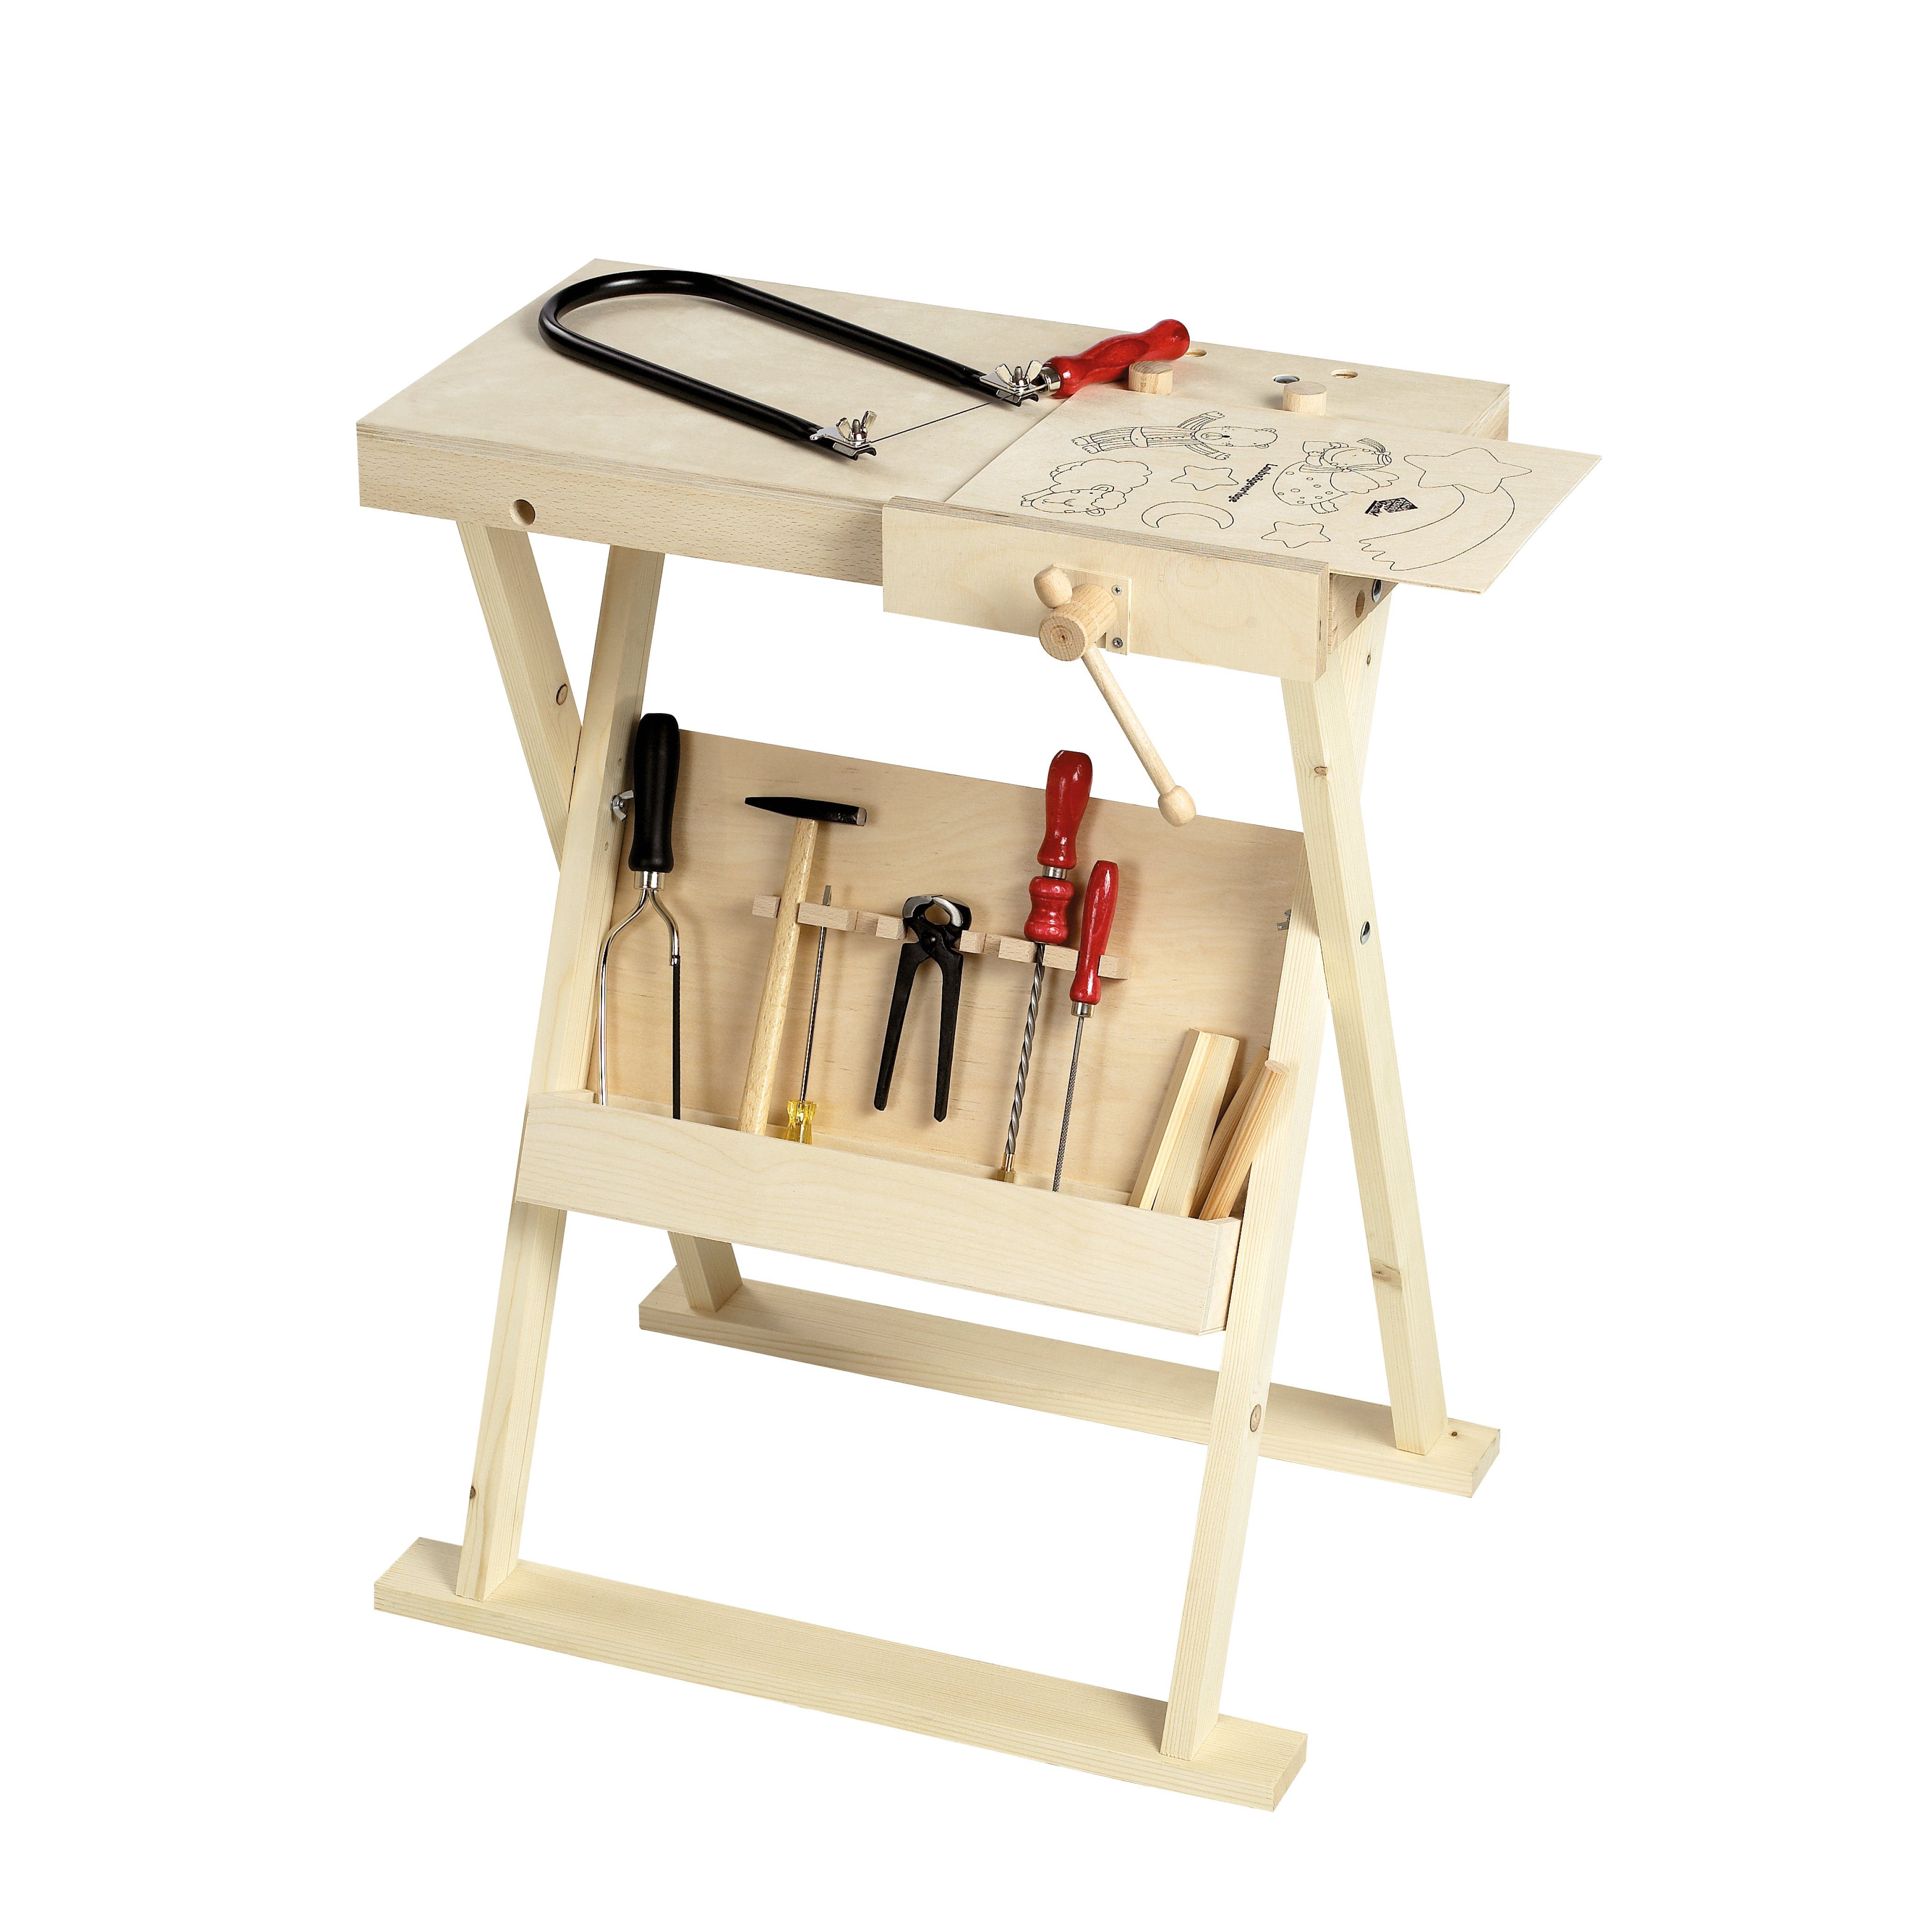 Pebaro Kinder-Werkzeug-Set 487 Klappbare Werkbank